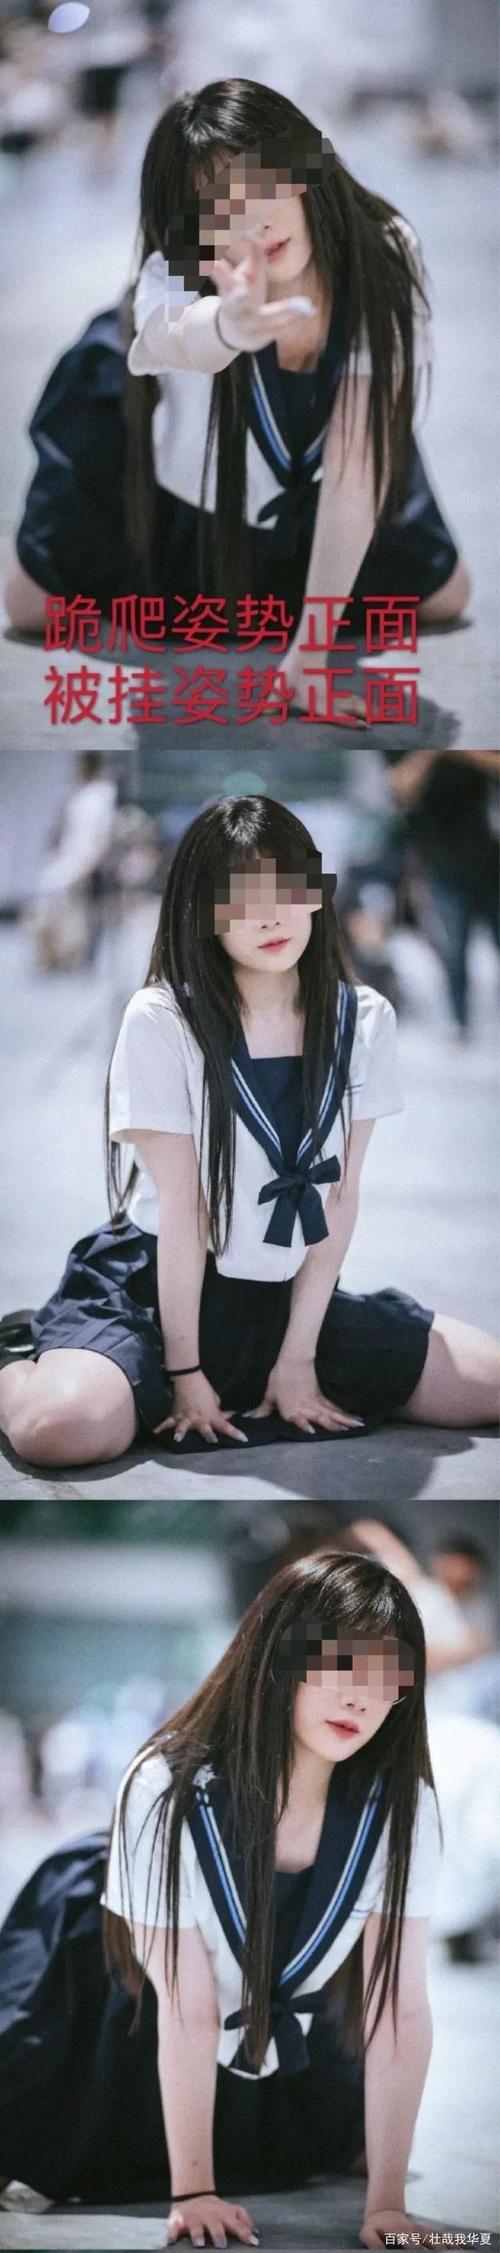 上海jk少女因摆姿势露出安全裤上热搜网友怒喷:这圈子没救了